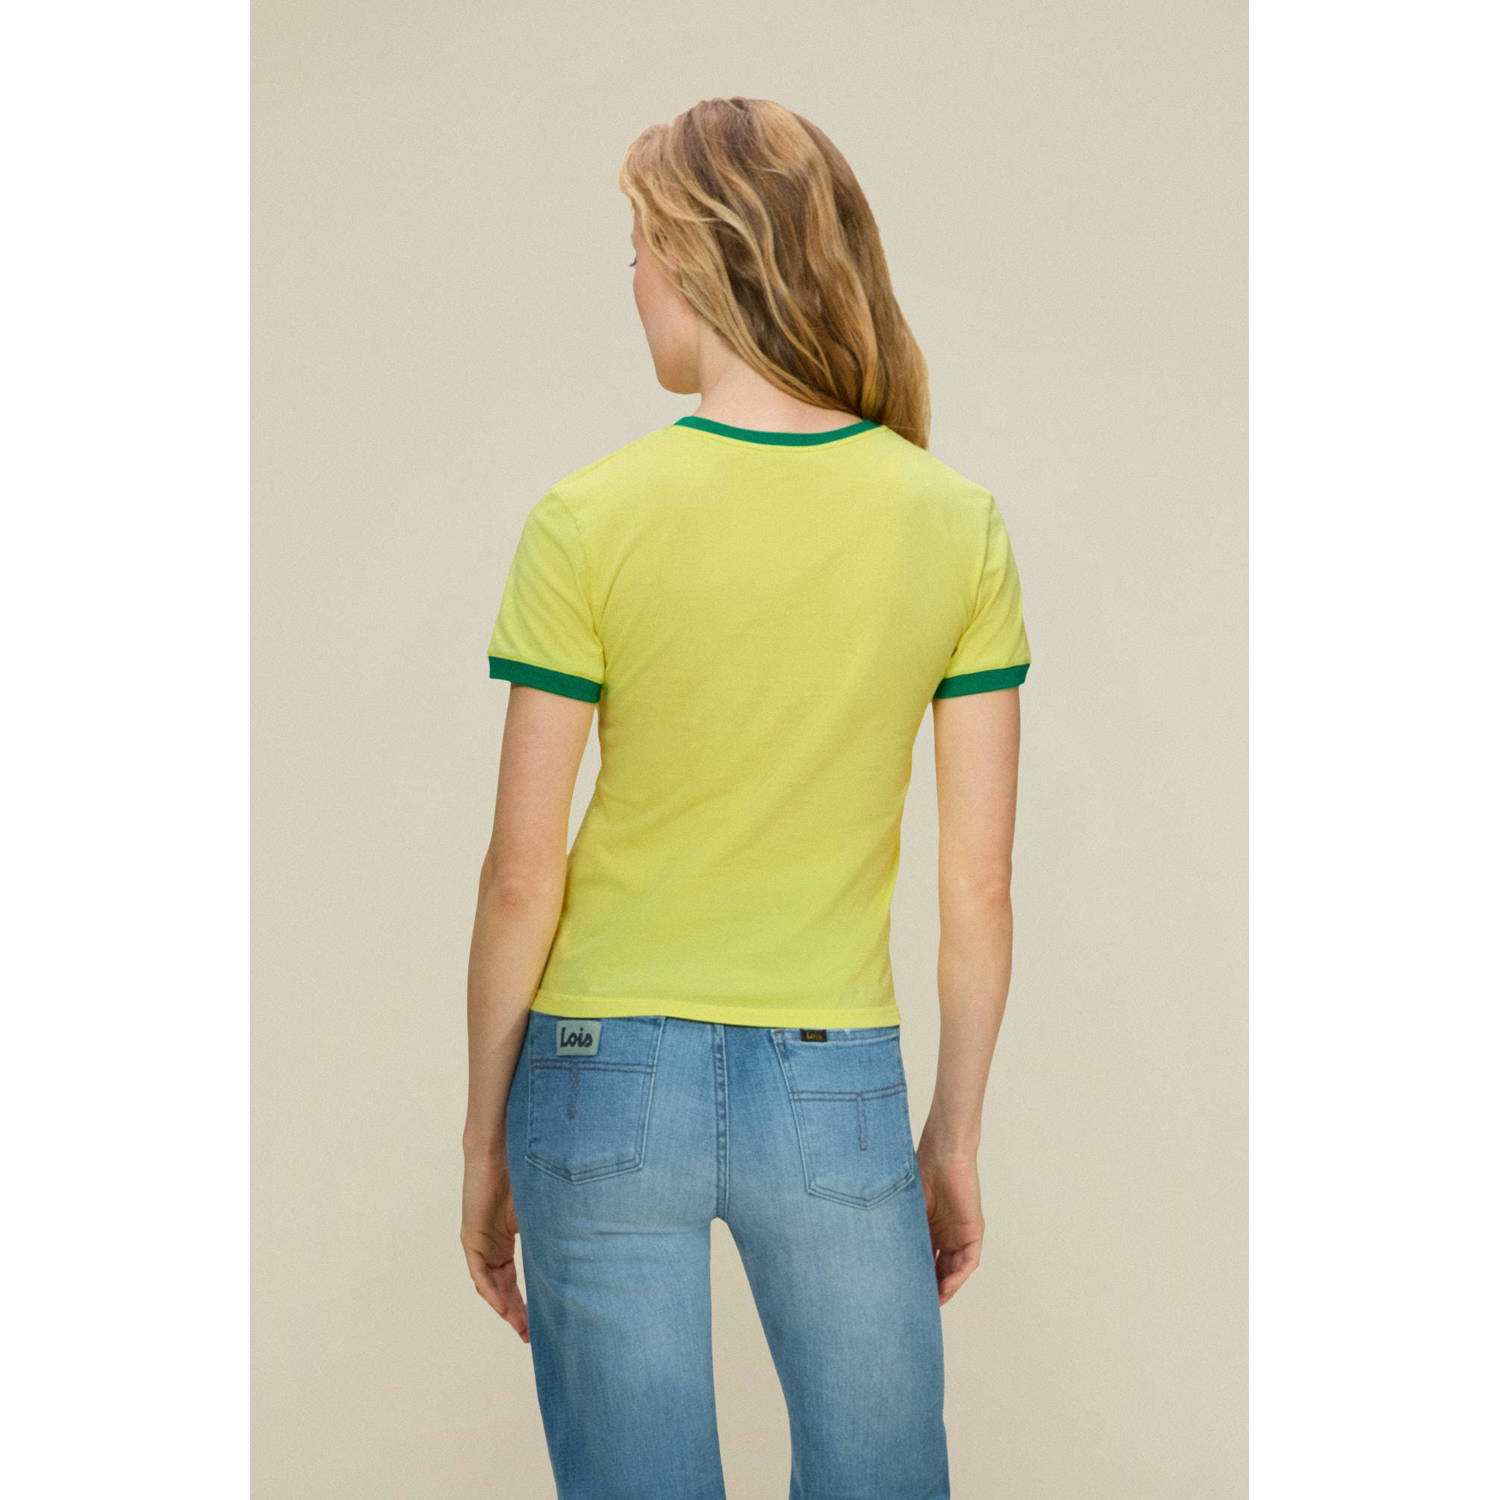 Lois T-shirt Emma Brazilian Legend met contrastbies geel groen